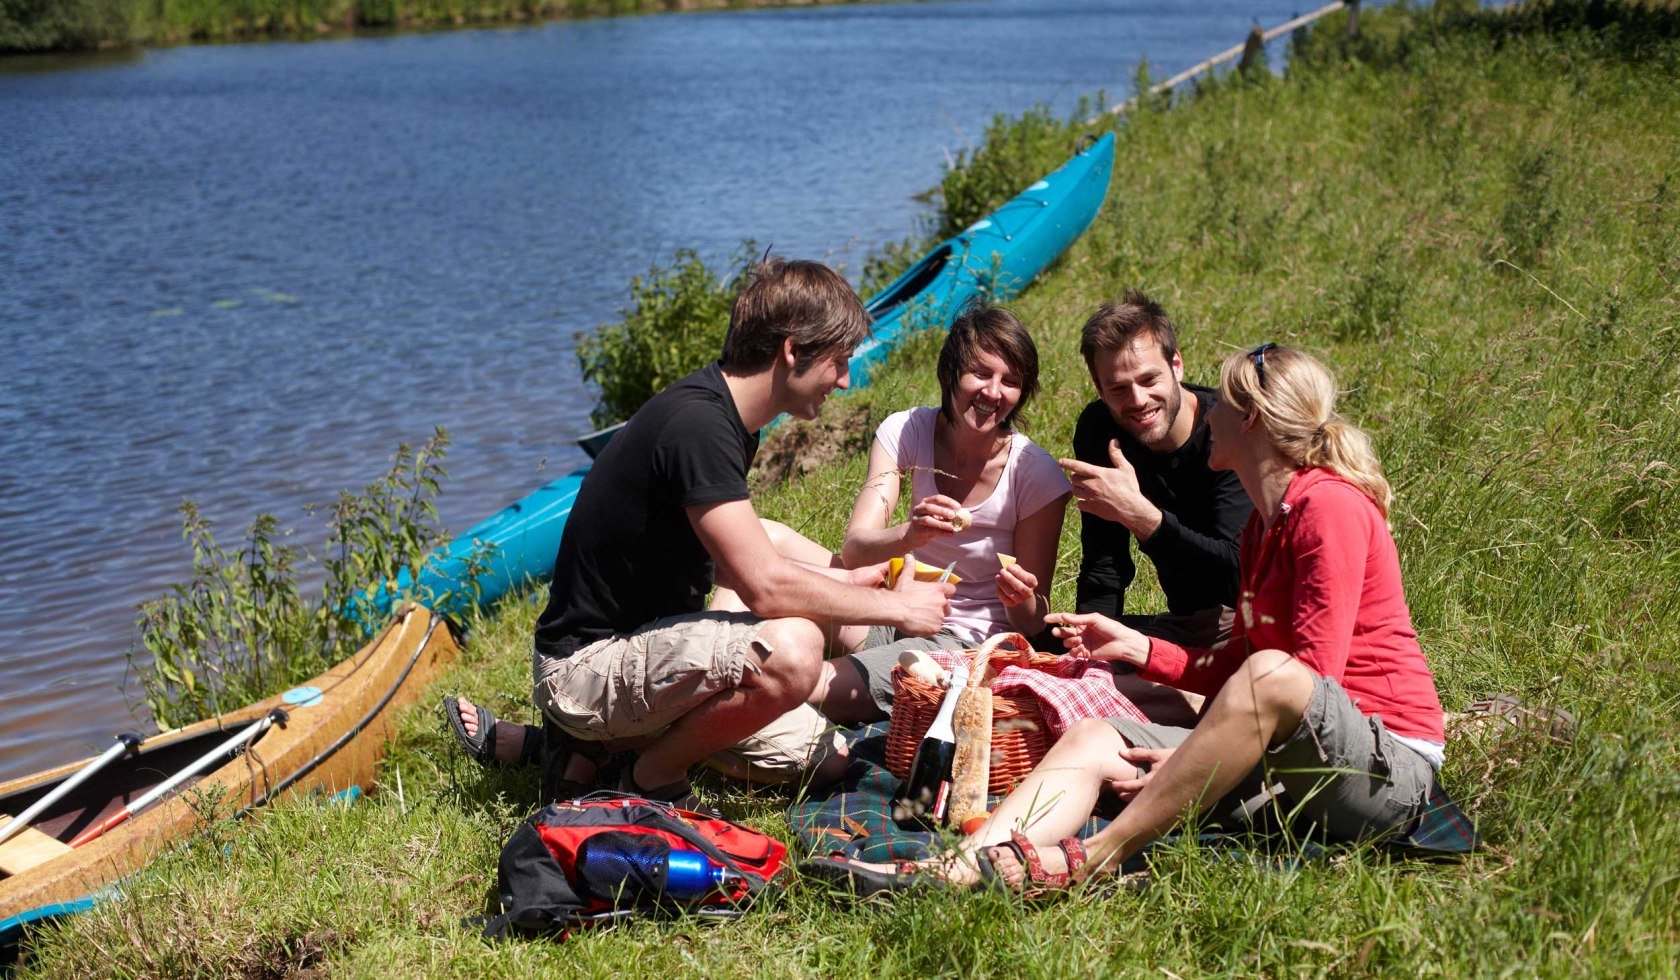 Picknick an der Ems, © Emsland Tourismus GmbH